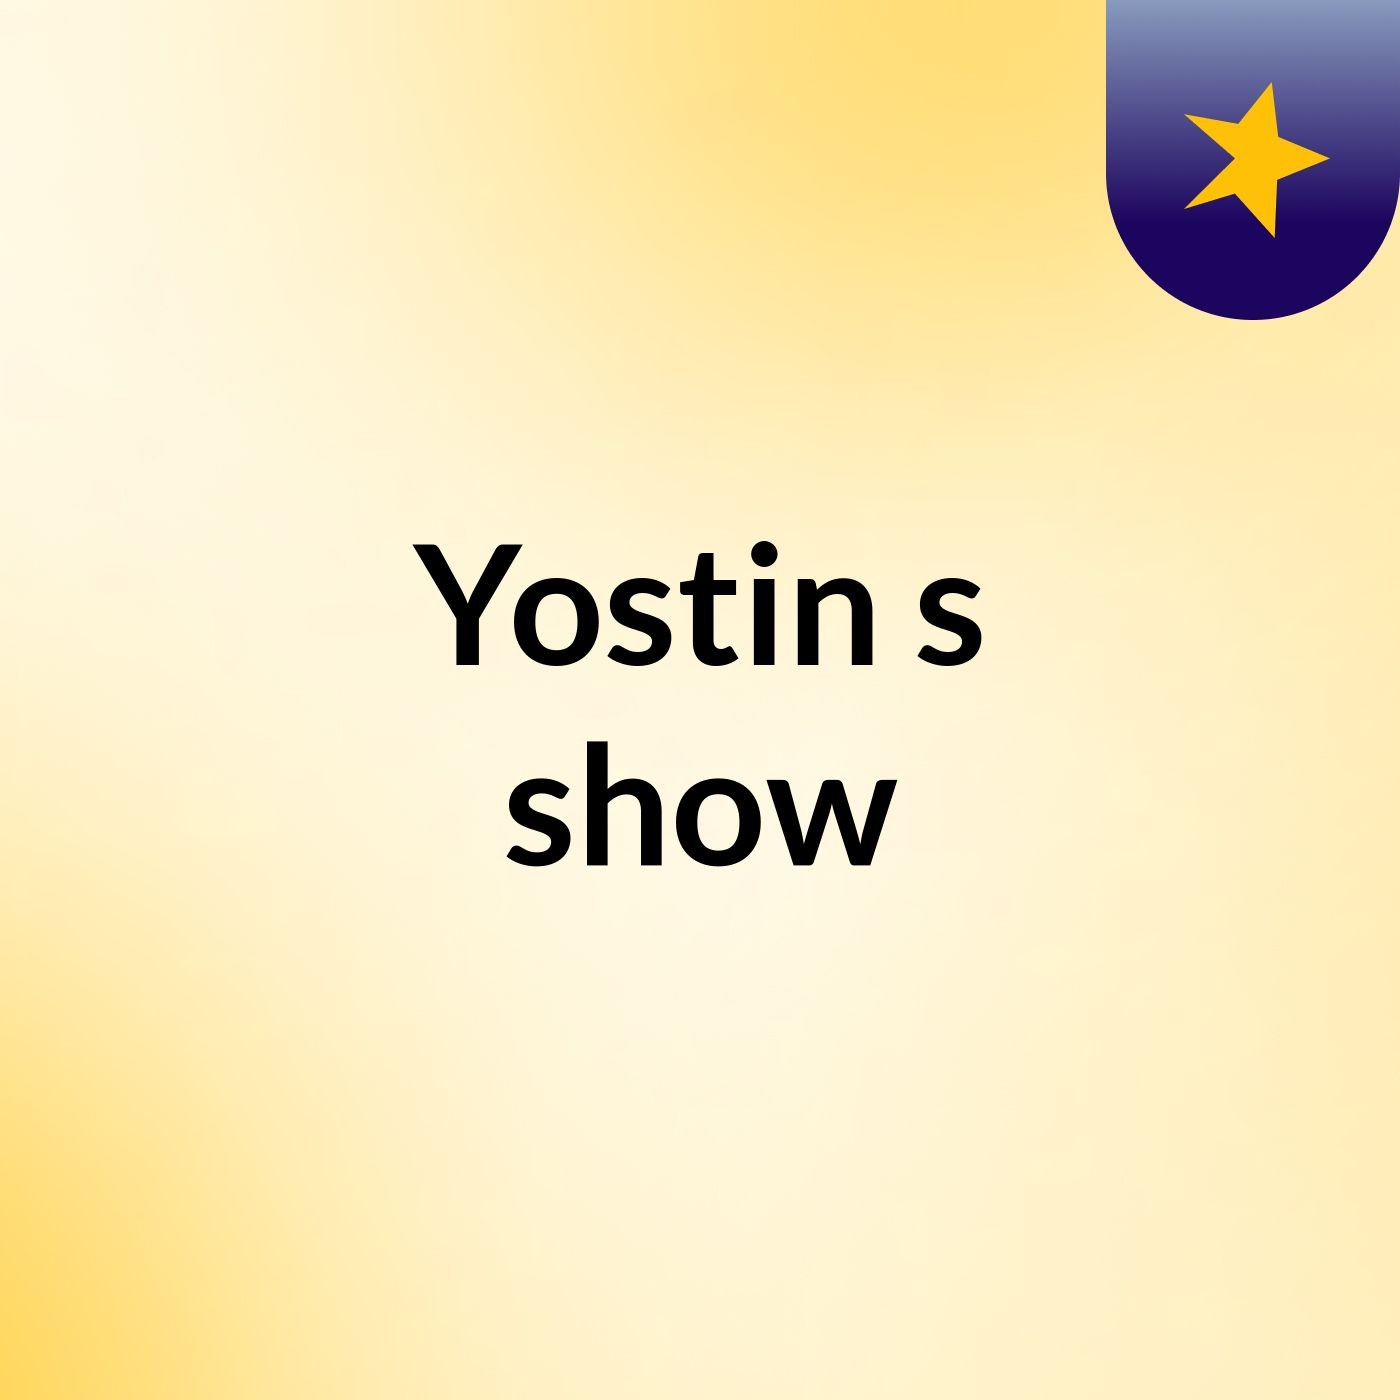 Yostin's show